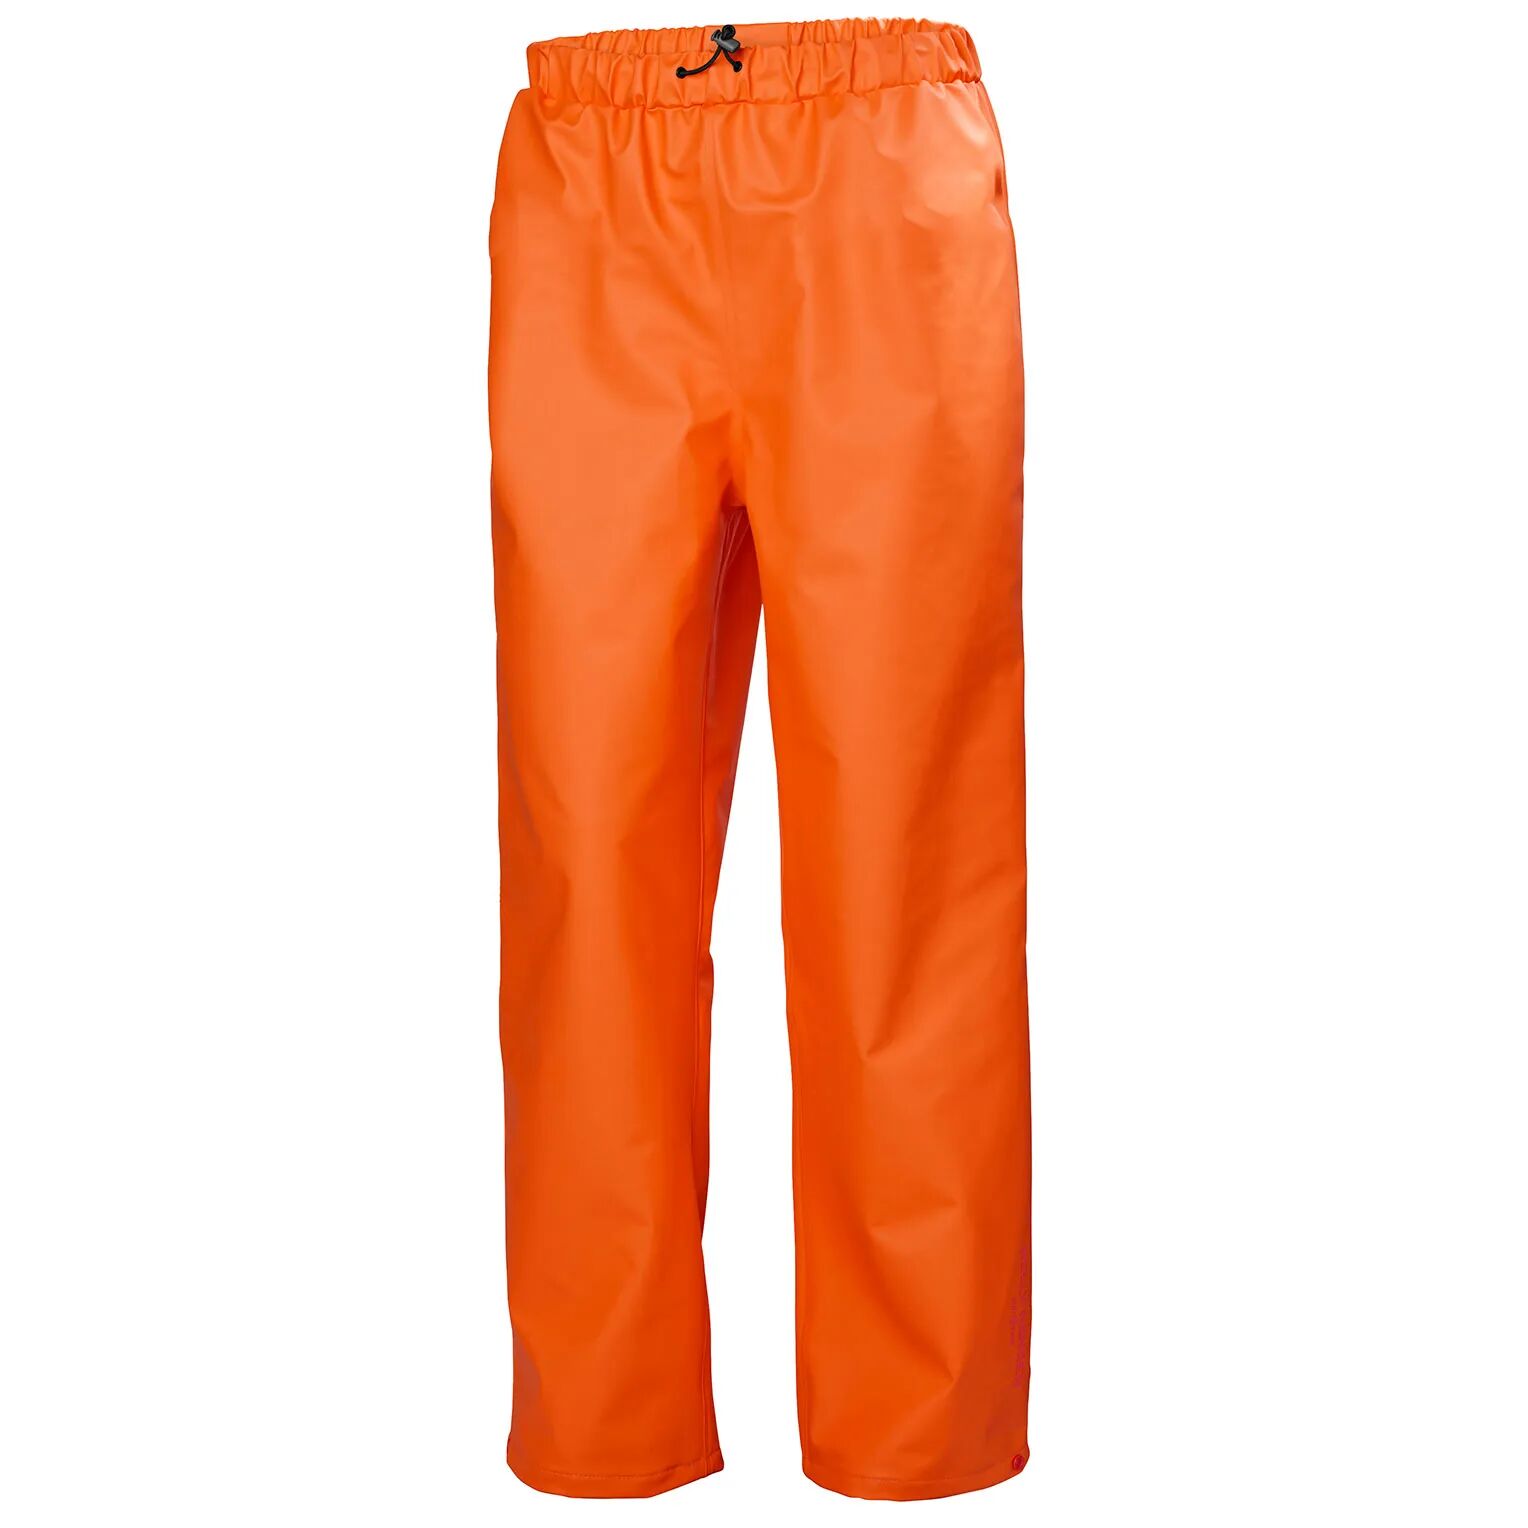 HH Workwear Helly Hansen Work Gale Rain Pant   Hh Workwear XXL Orange  Male